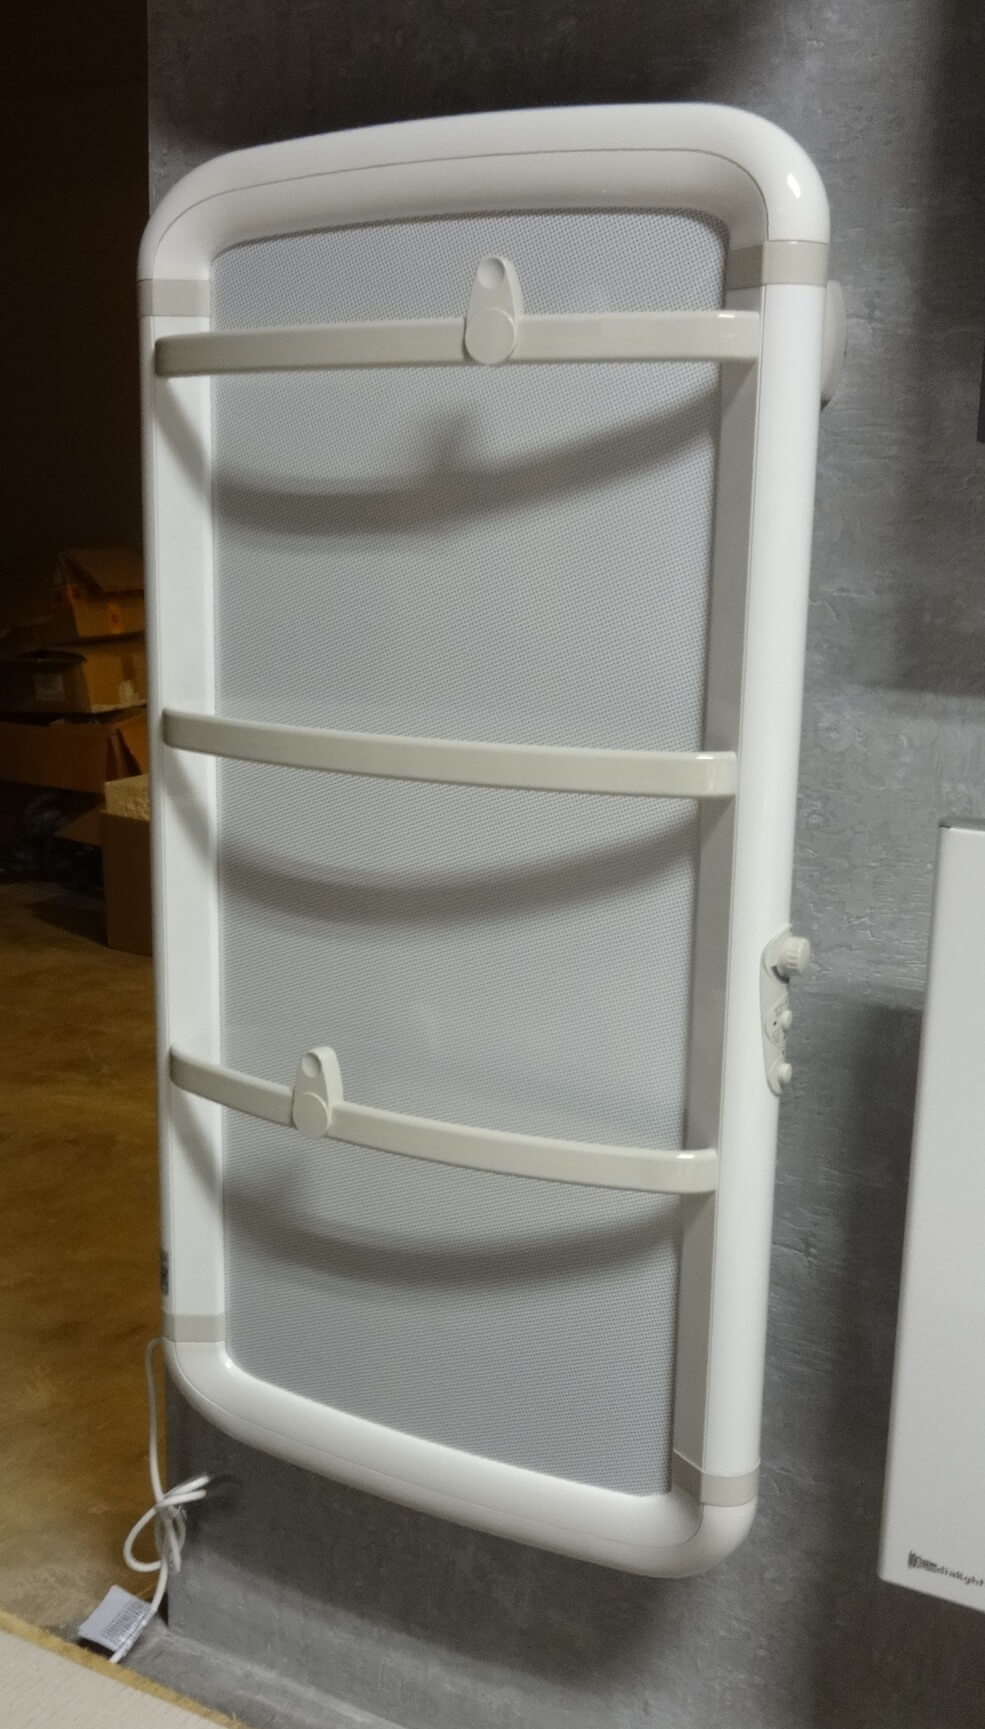 Łazienkowy grzejniki elektryczny na podczerwień - Acanto 110 białe